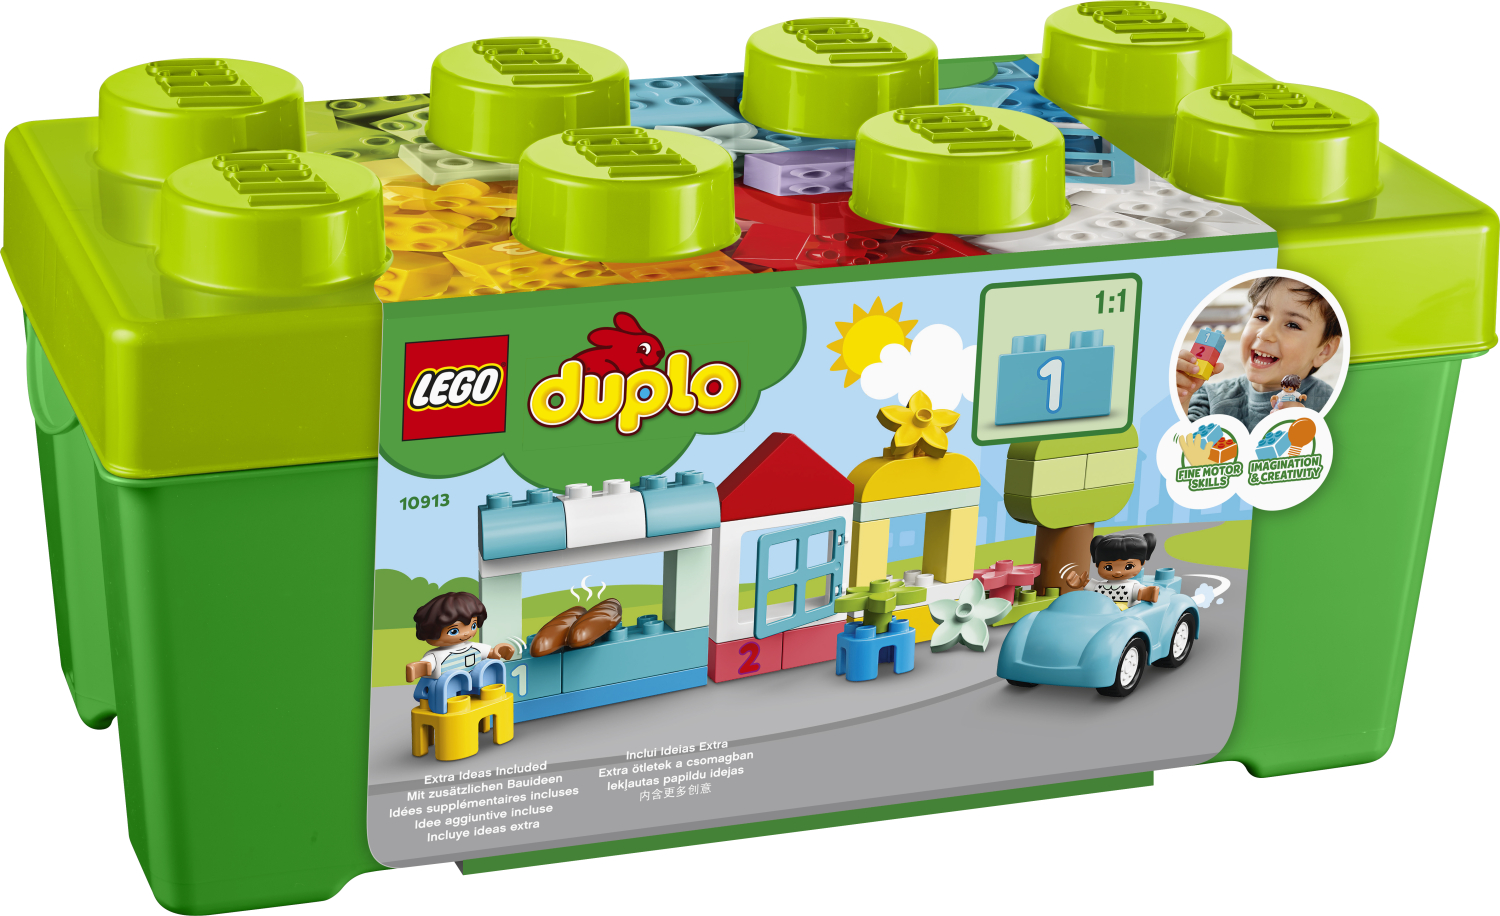 LEGO DUPLO 10913 Thùng Gạch Duplo Sáng Tạo (65 Chi tiết)